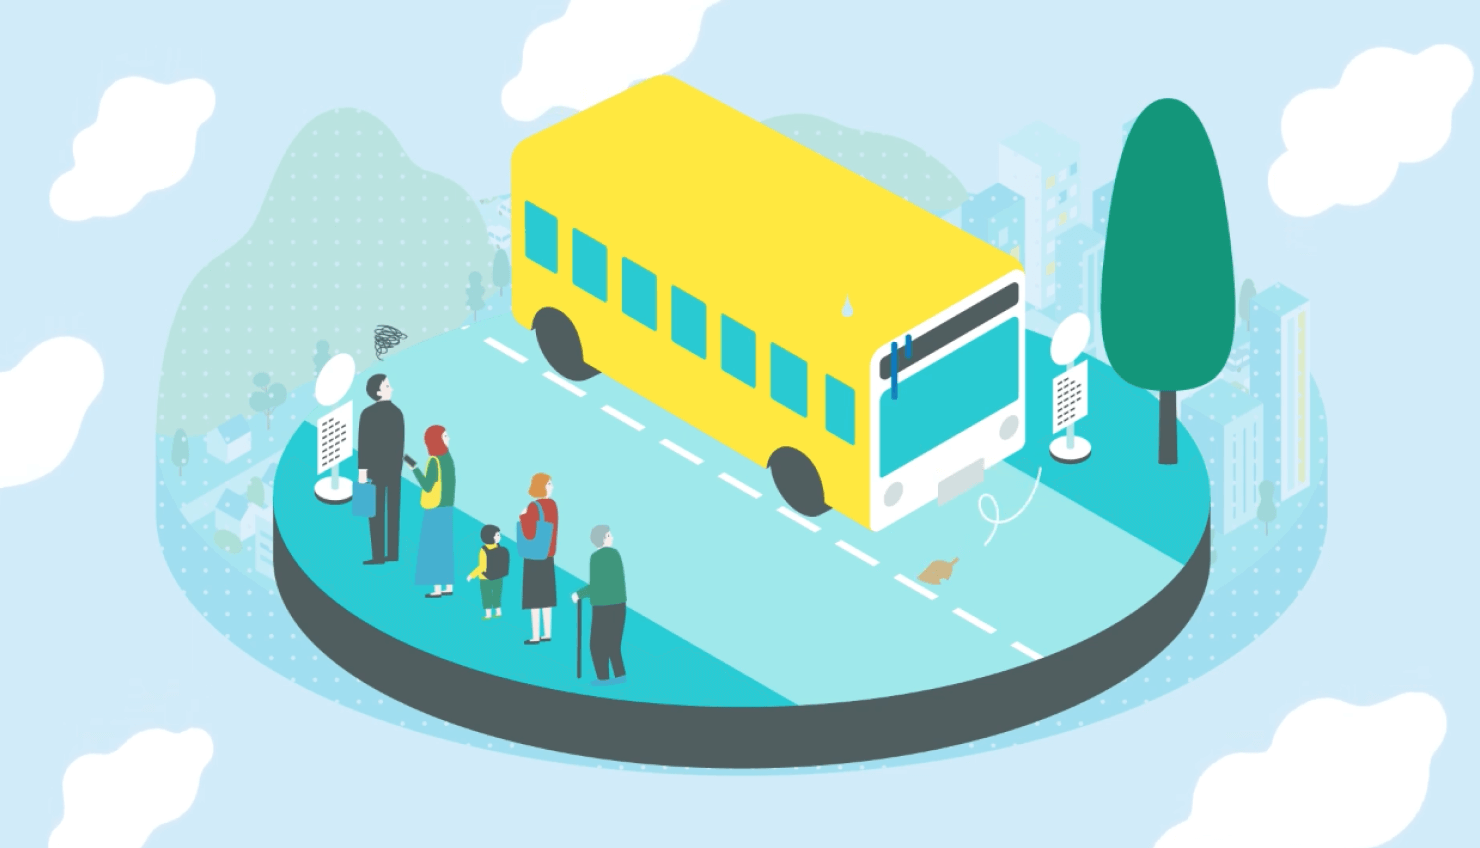 動画キャプチャ。たくさん人が並ぶバス停にバスが来ず、皆ががっかりしている様子がイラストで表現されている。